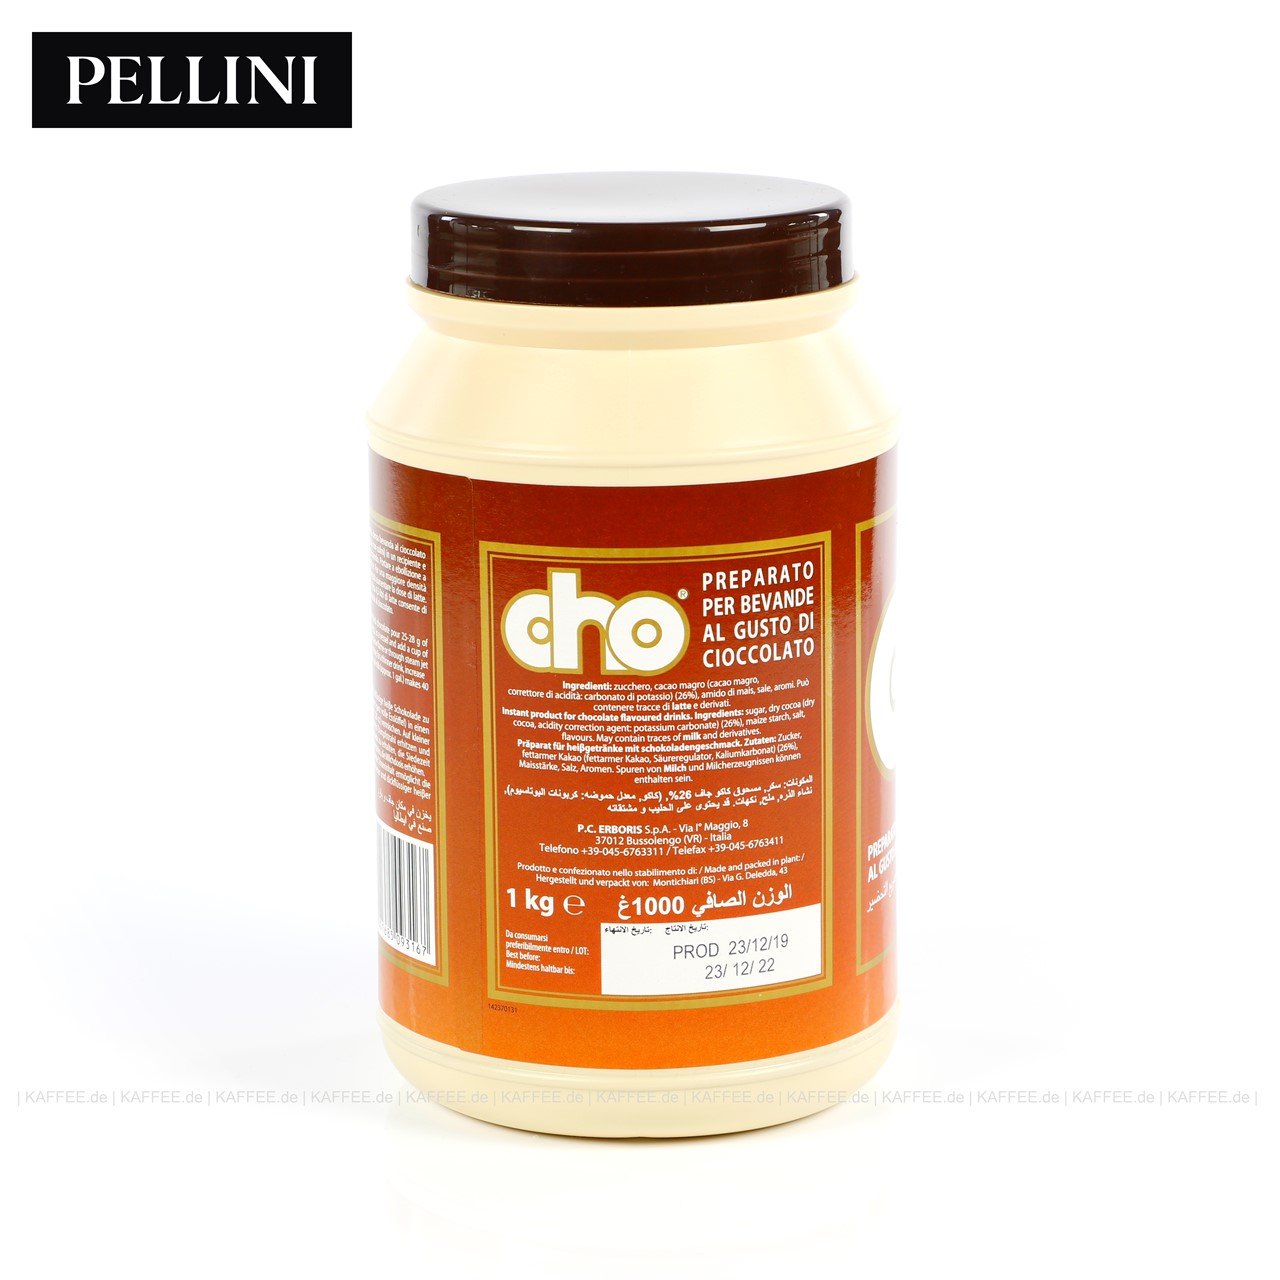 Pellini CHO - რძის ცხელი შოკოლადი 1 კგ